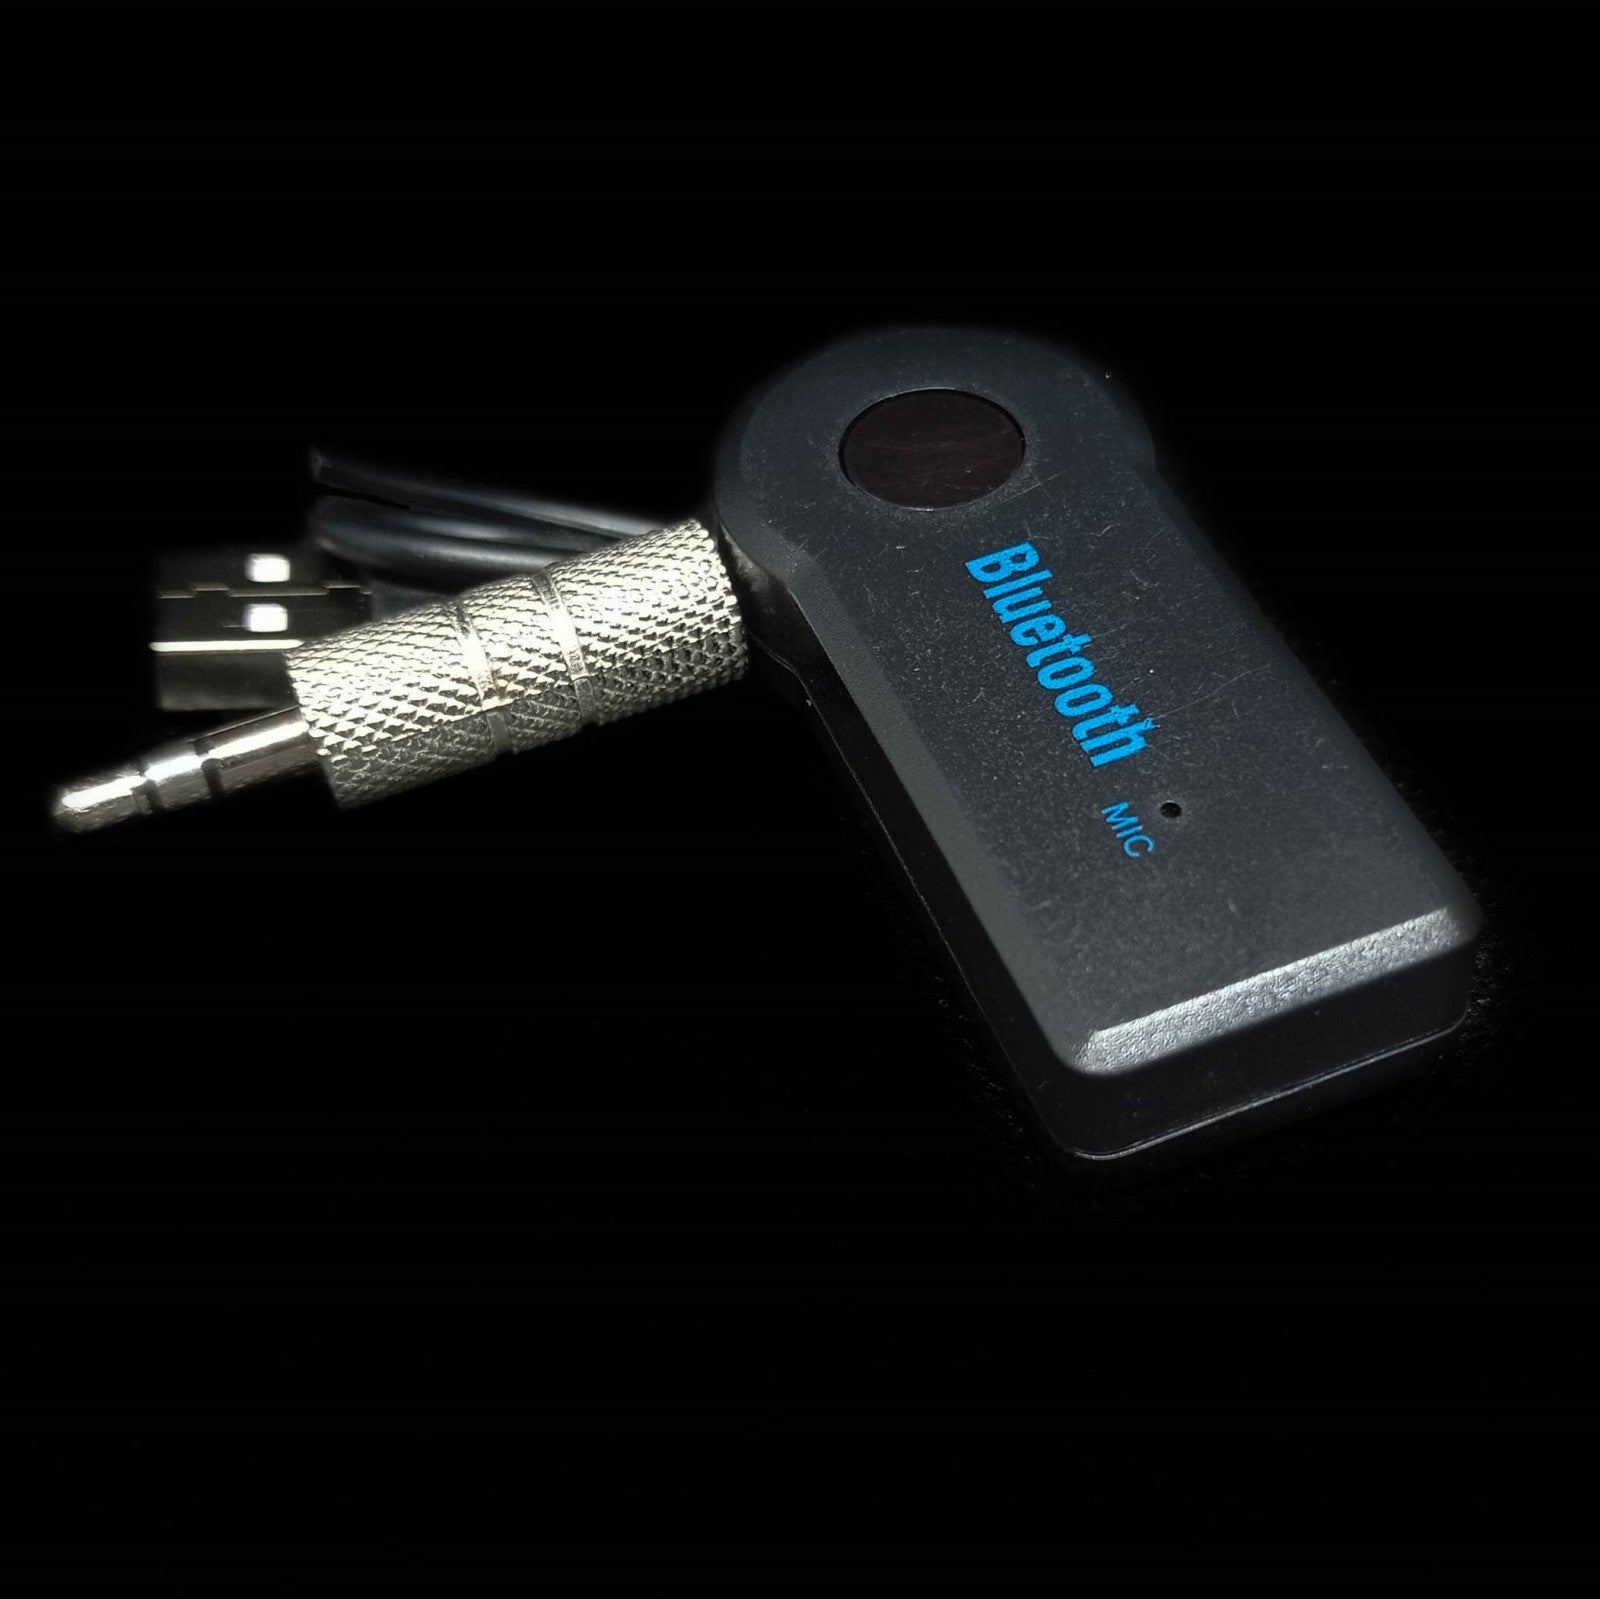 transmissor Bluetooth aux detalhe do produto na cor preto, com cabos de ligação